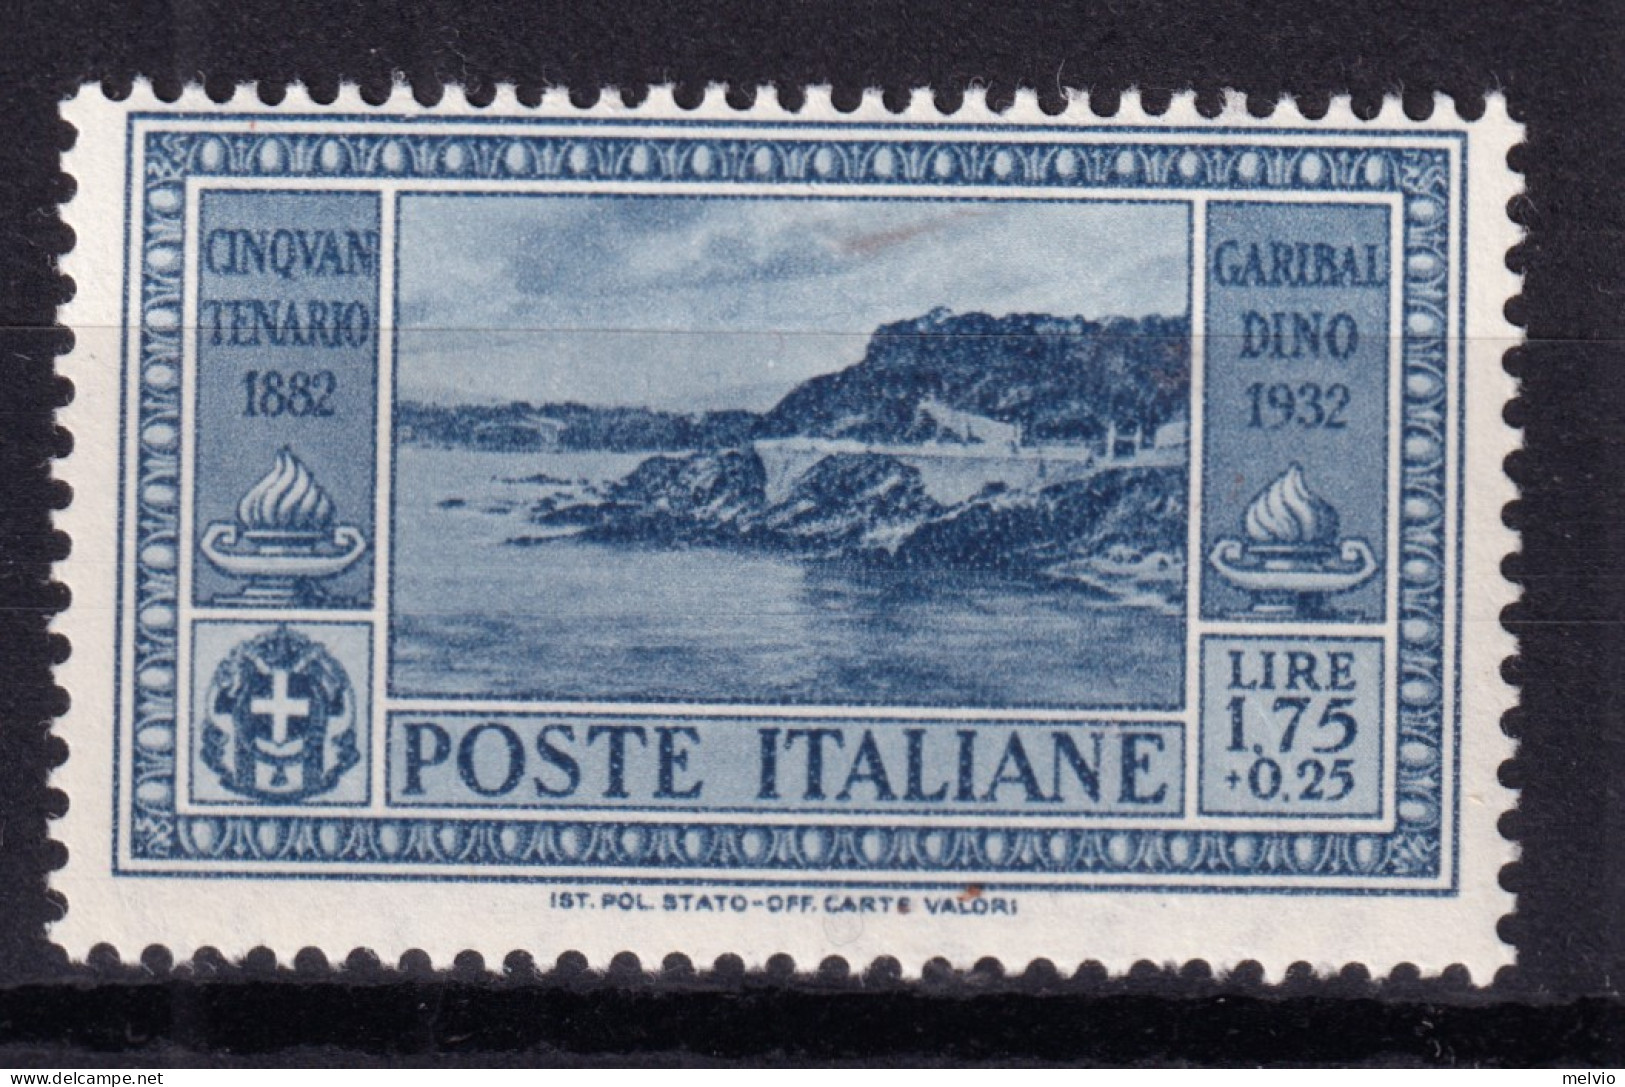 1932 GARIBALDI Lire 1,75 Nuovo Traccia Linguella - Mint/hinged